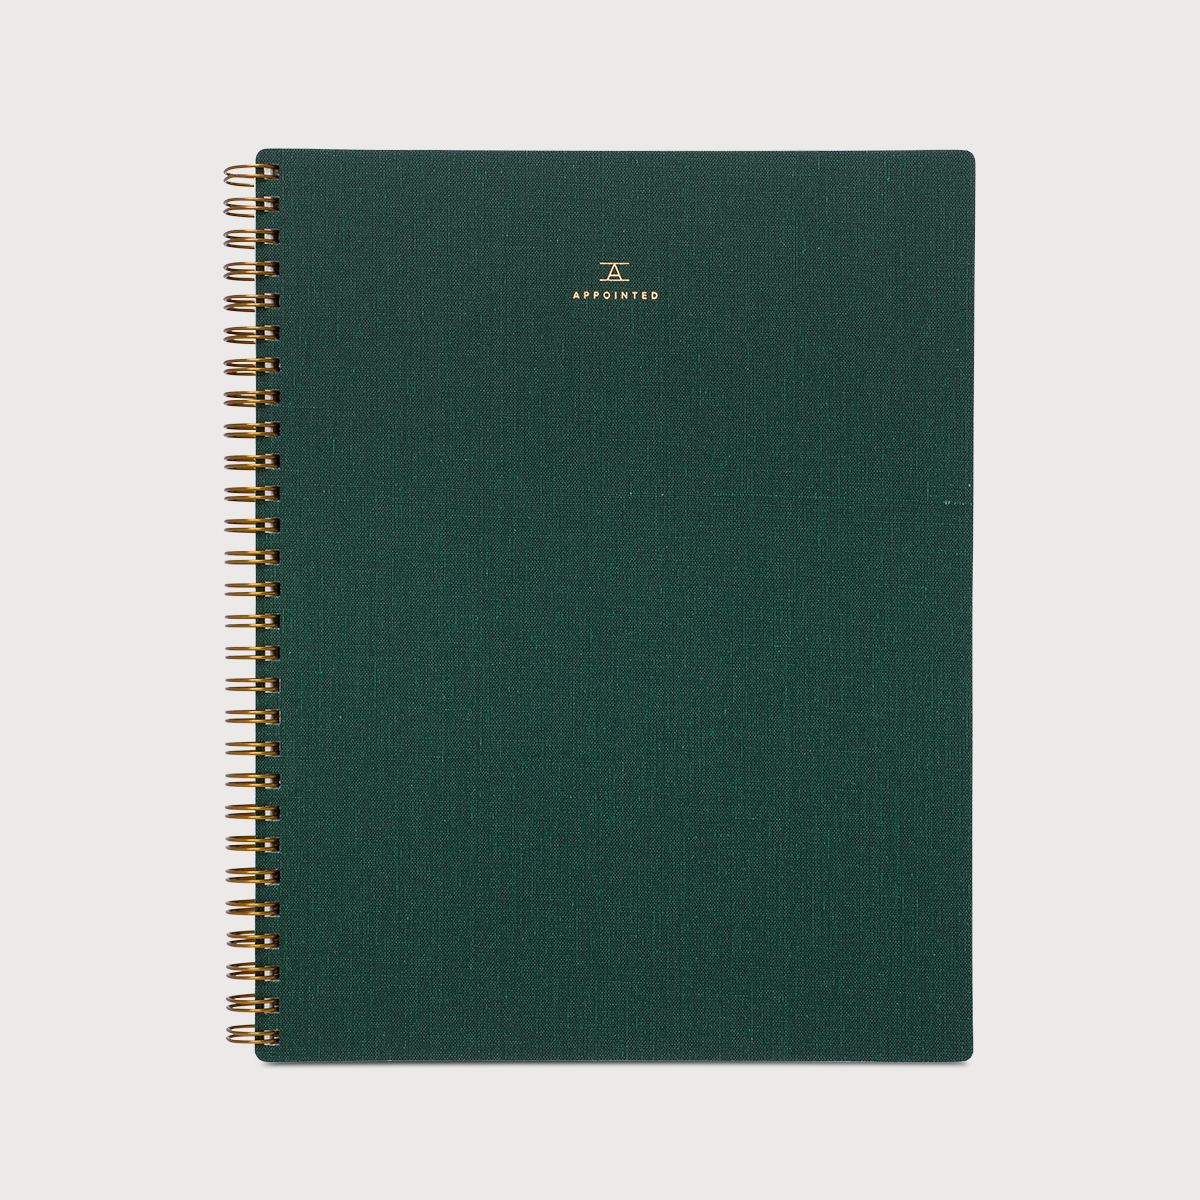 Hunter Green Notebook